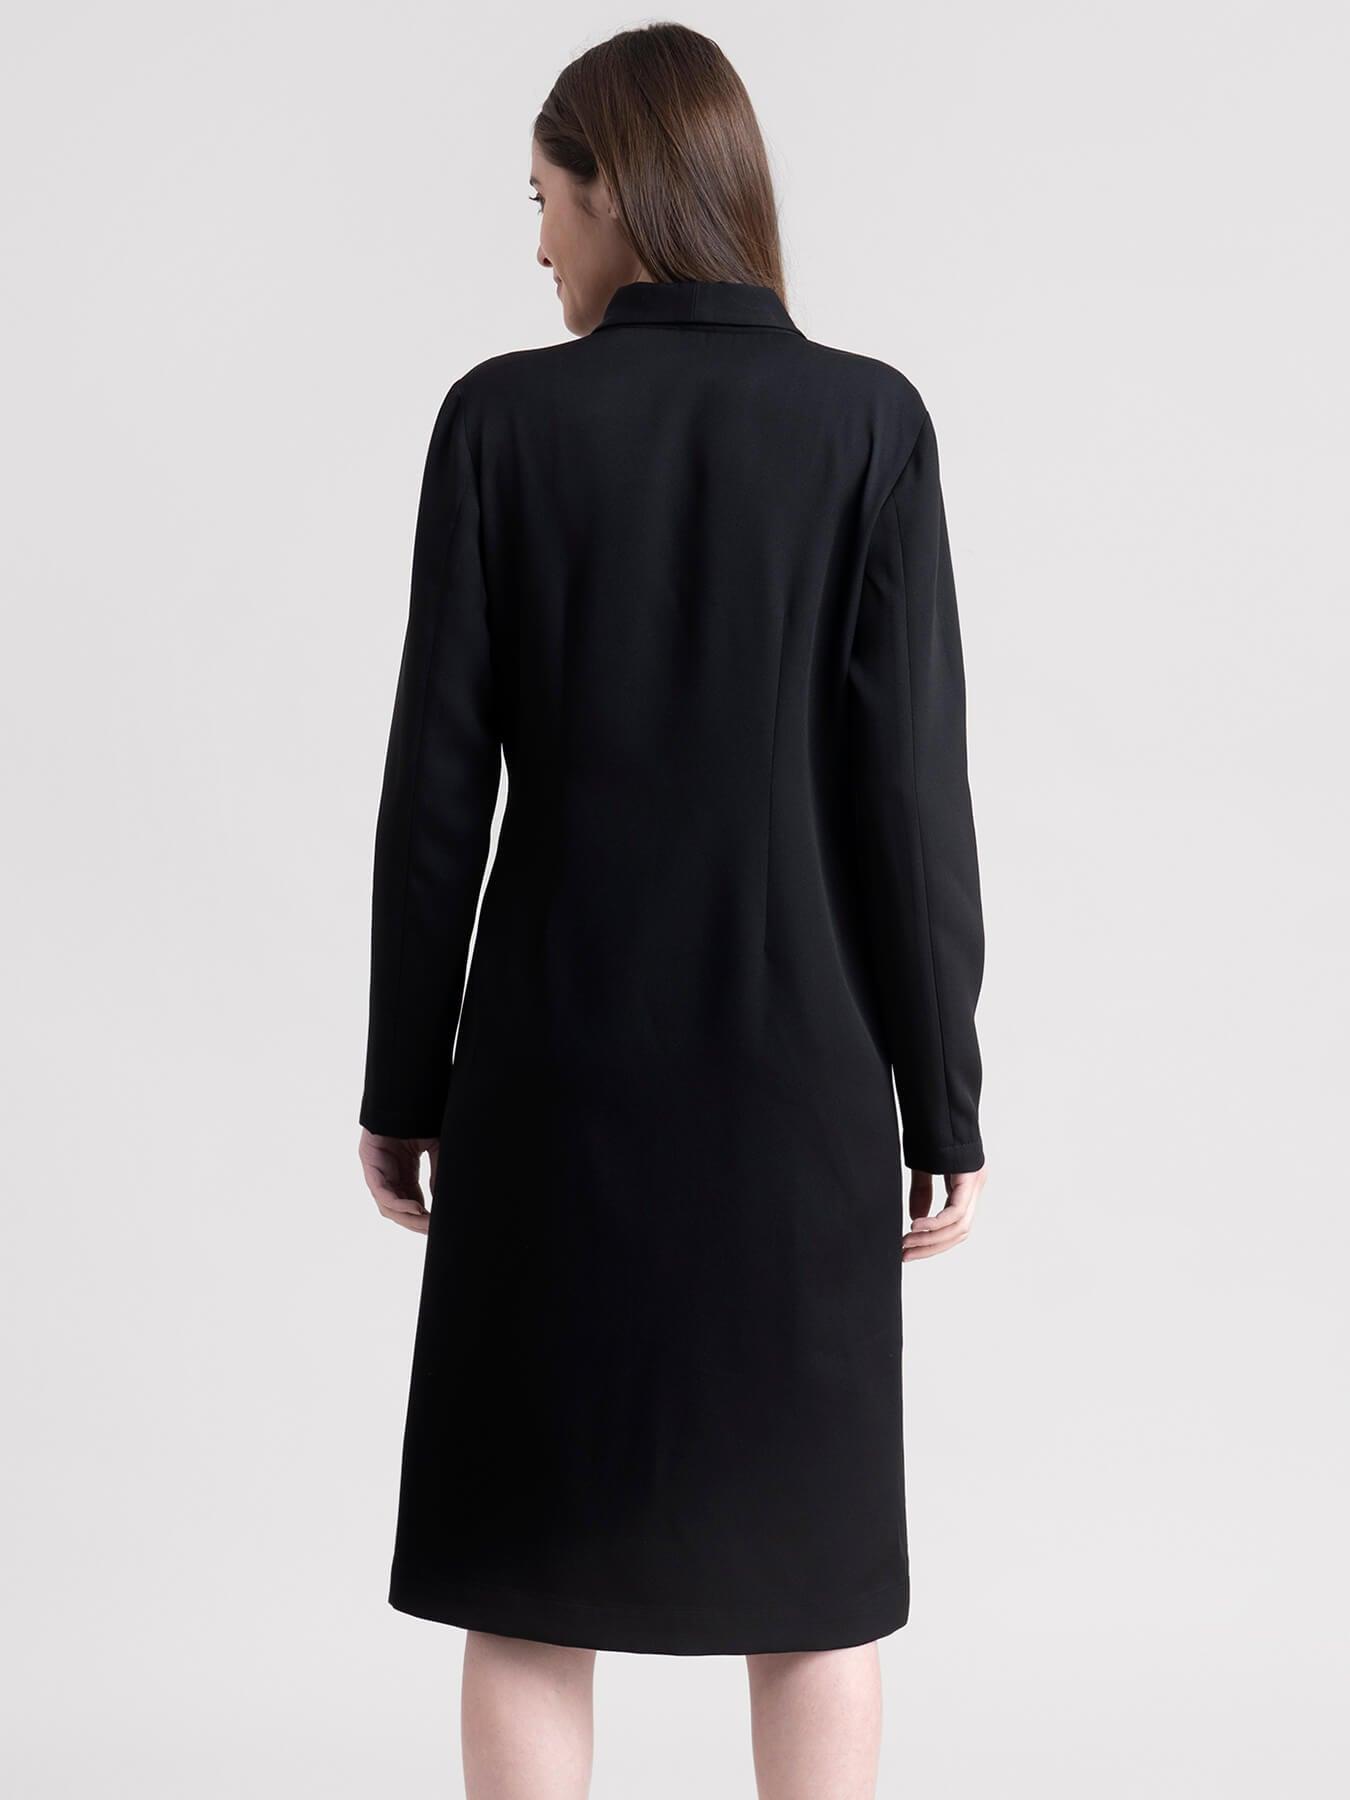 Blazer Button Down Dress - Black| Formal Dresses